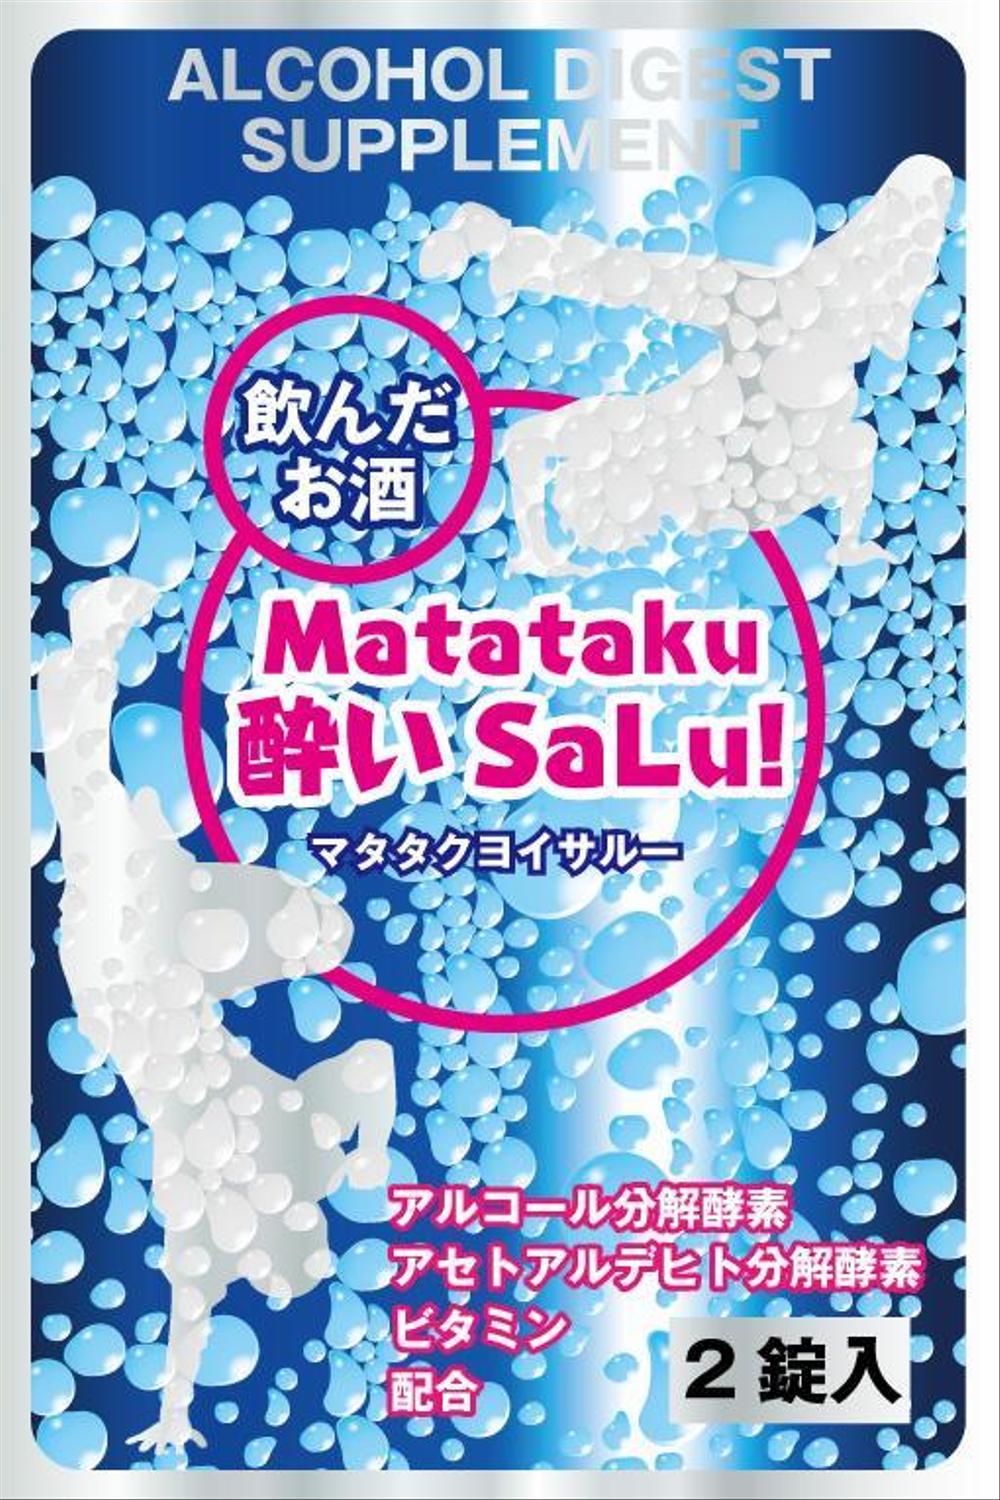 飲んだお酒-Matataku-酔いSaLu!2.jpg